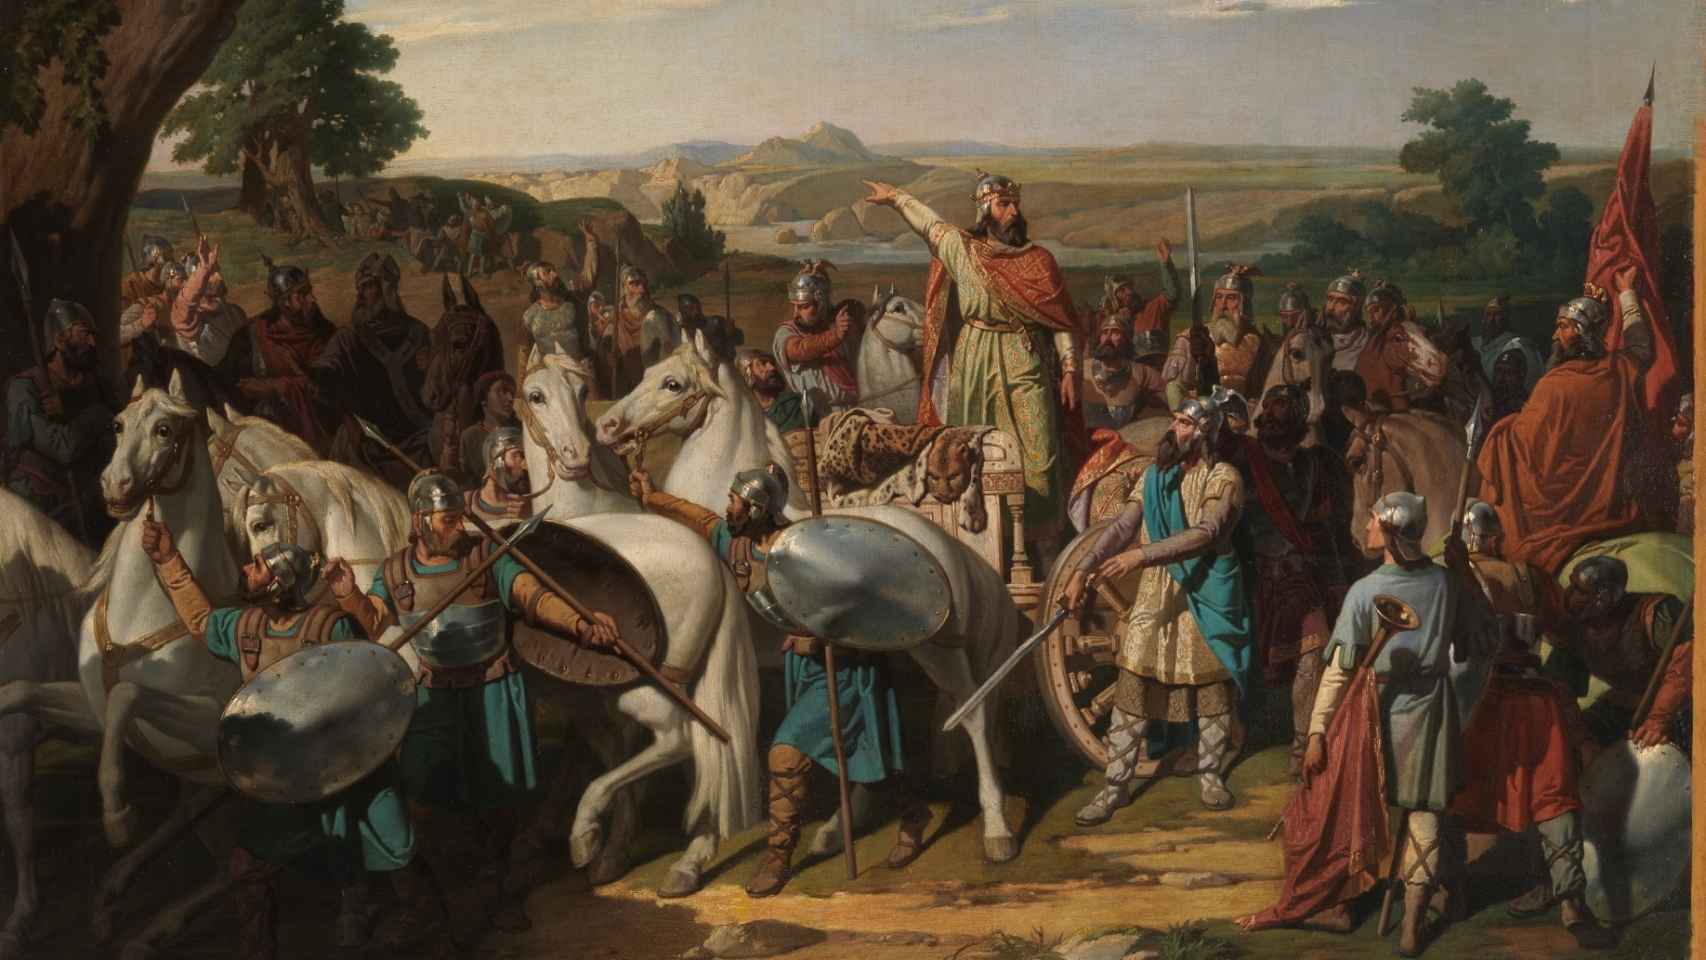 El rey don Rodrigo arengando a los jefes de su ejército antes de dar la batalla del Guadalete.